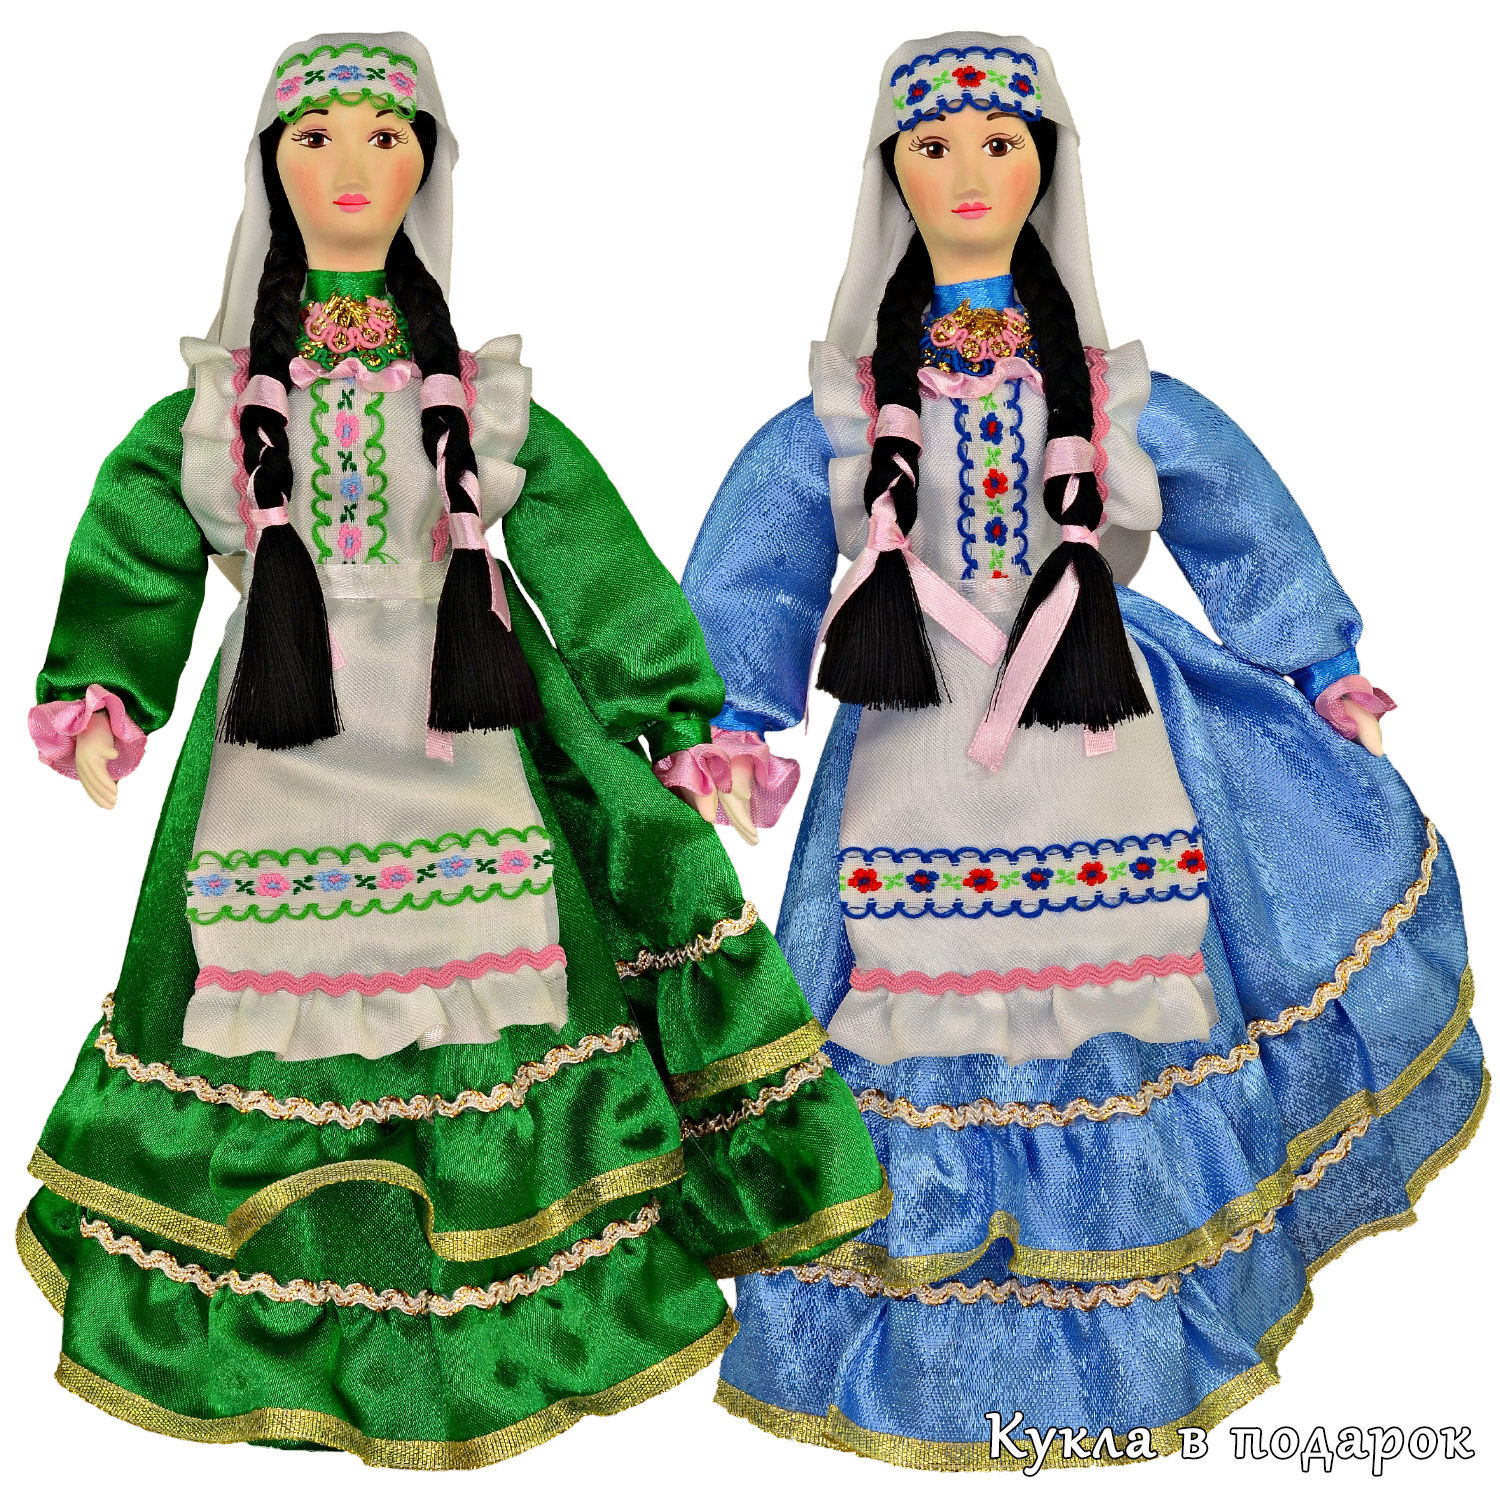 Красота казахского национального костюма в миниатюре: кукольный модельер Гульнара Хамза